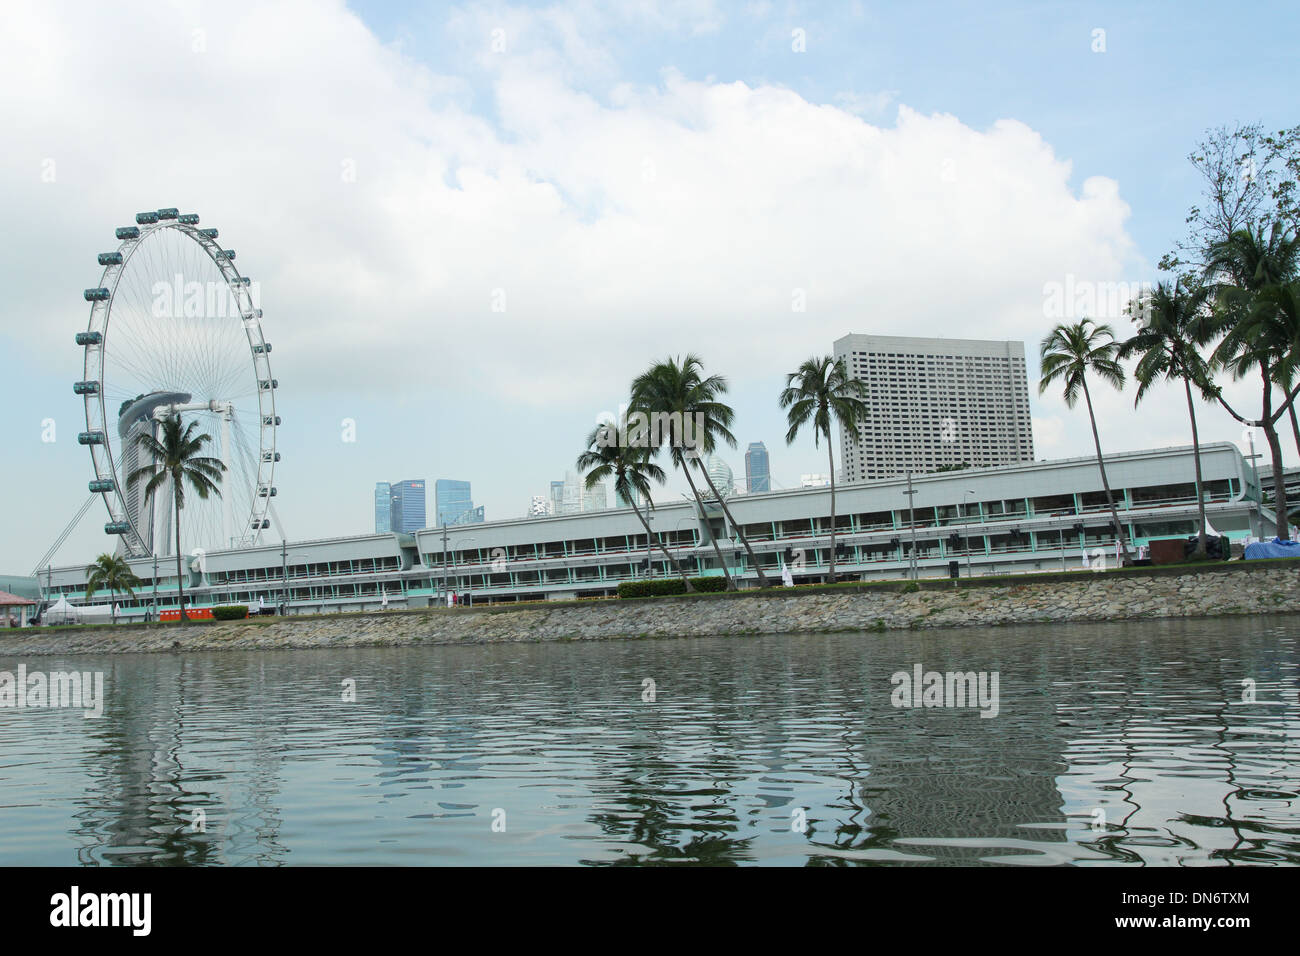 Formel 1 Racing Boxenbereich. Singapur. Riesenrad Singapore Flyer ist sichtbar. Stockfoto